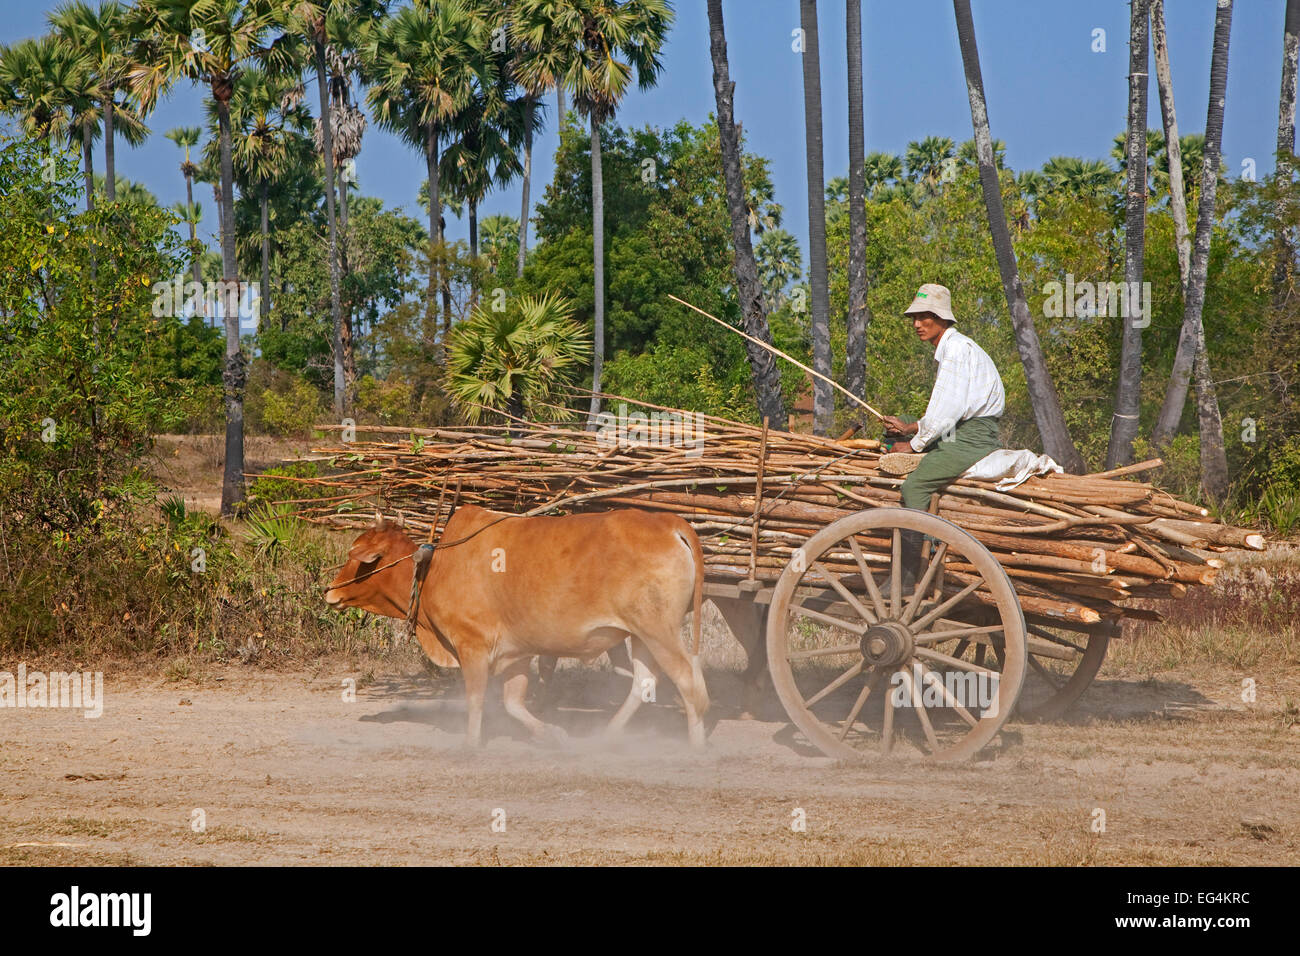 Panier en bois chargés de bois tiré par deux zébus Brahman / bovins (Bos taurus indicus) au Myanmar / Birmanie Banque D'Images